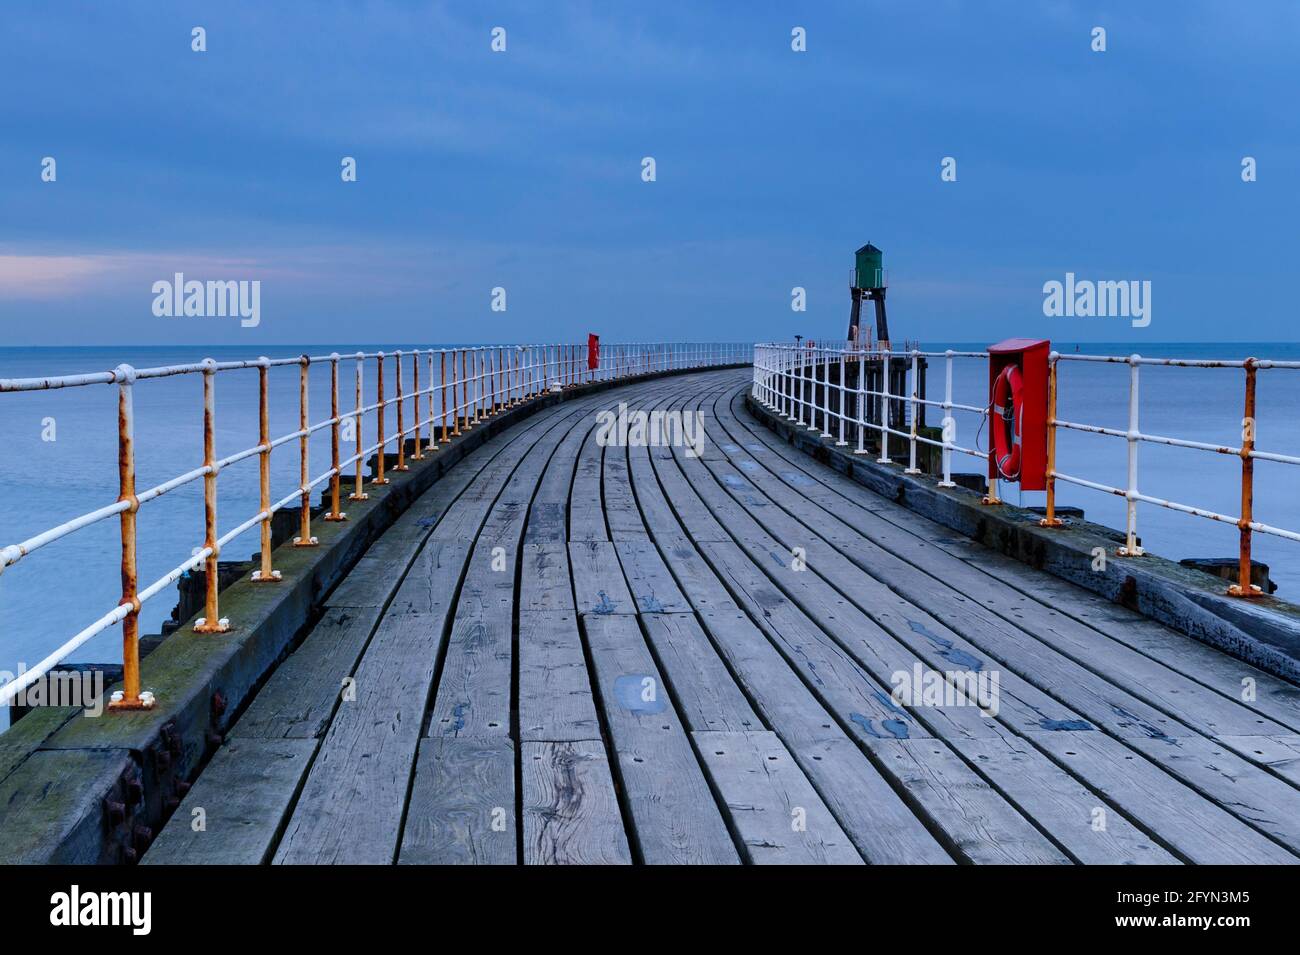 Whitby's West Pier (mare calmo, passerella in legno, faro, spettacolare luce notturna blu dell'ora) - ingresso al porto di Whitby, costa del Nord Yorkshire, Inghilterra Regno Unito Foto Stock